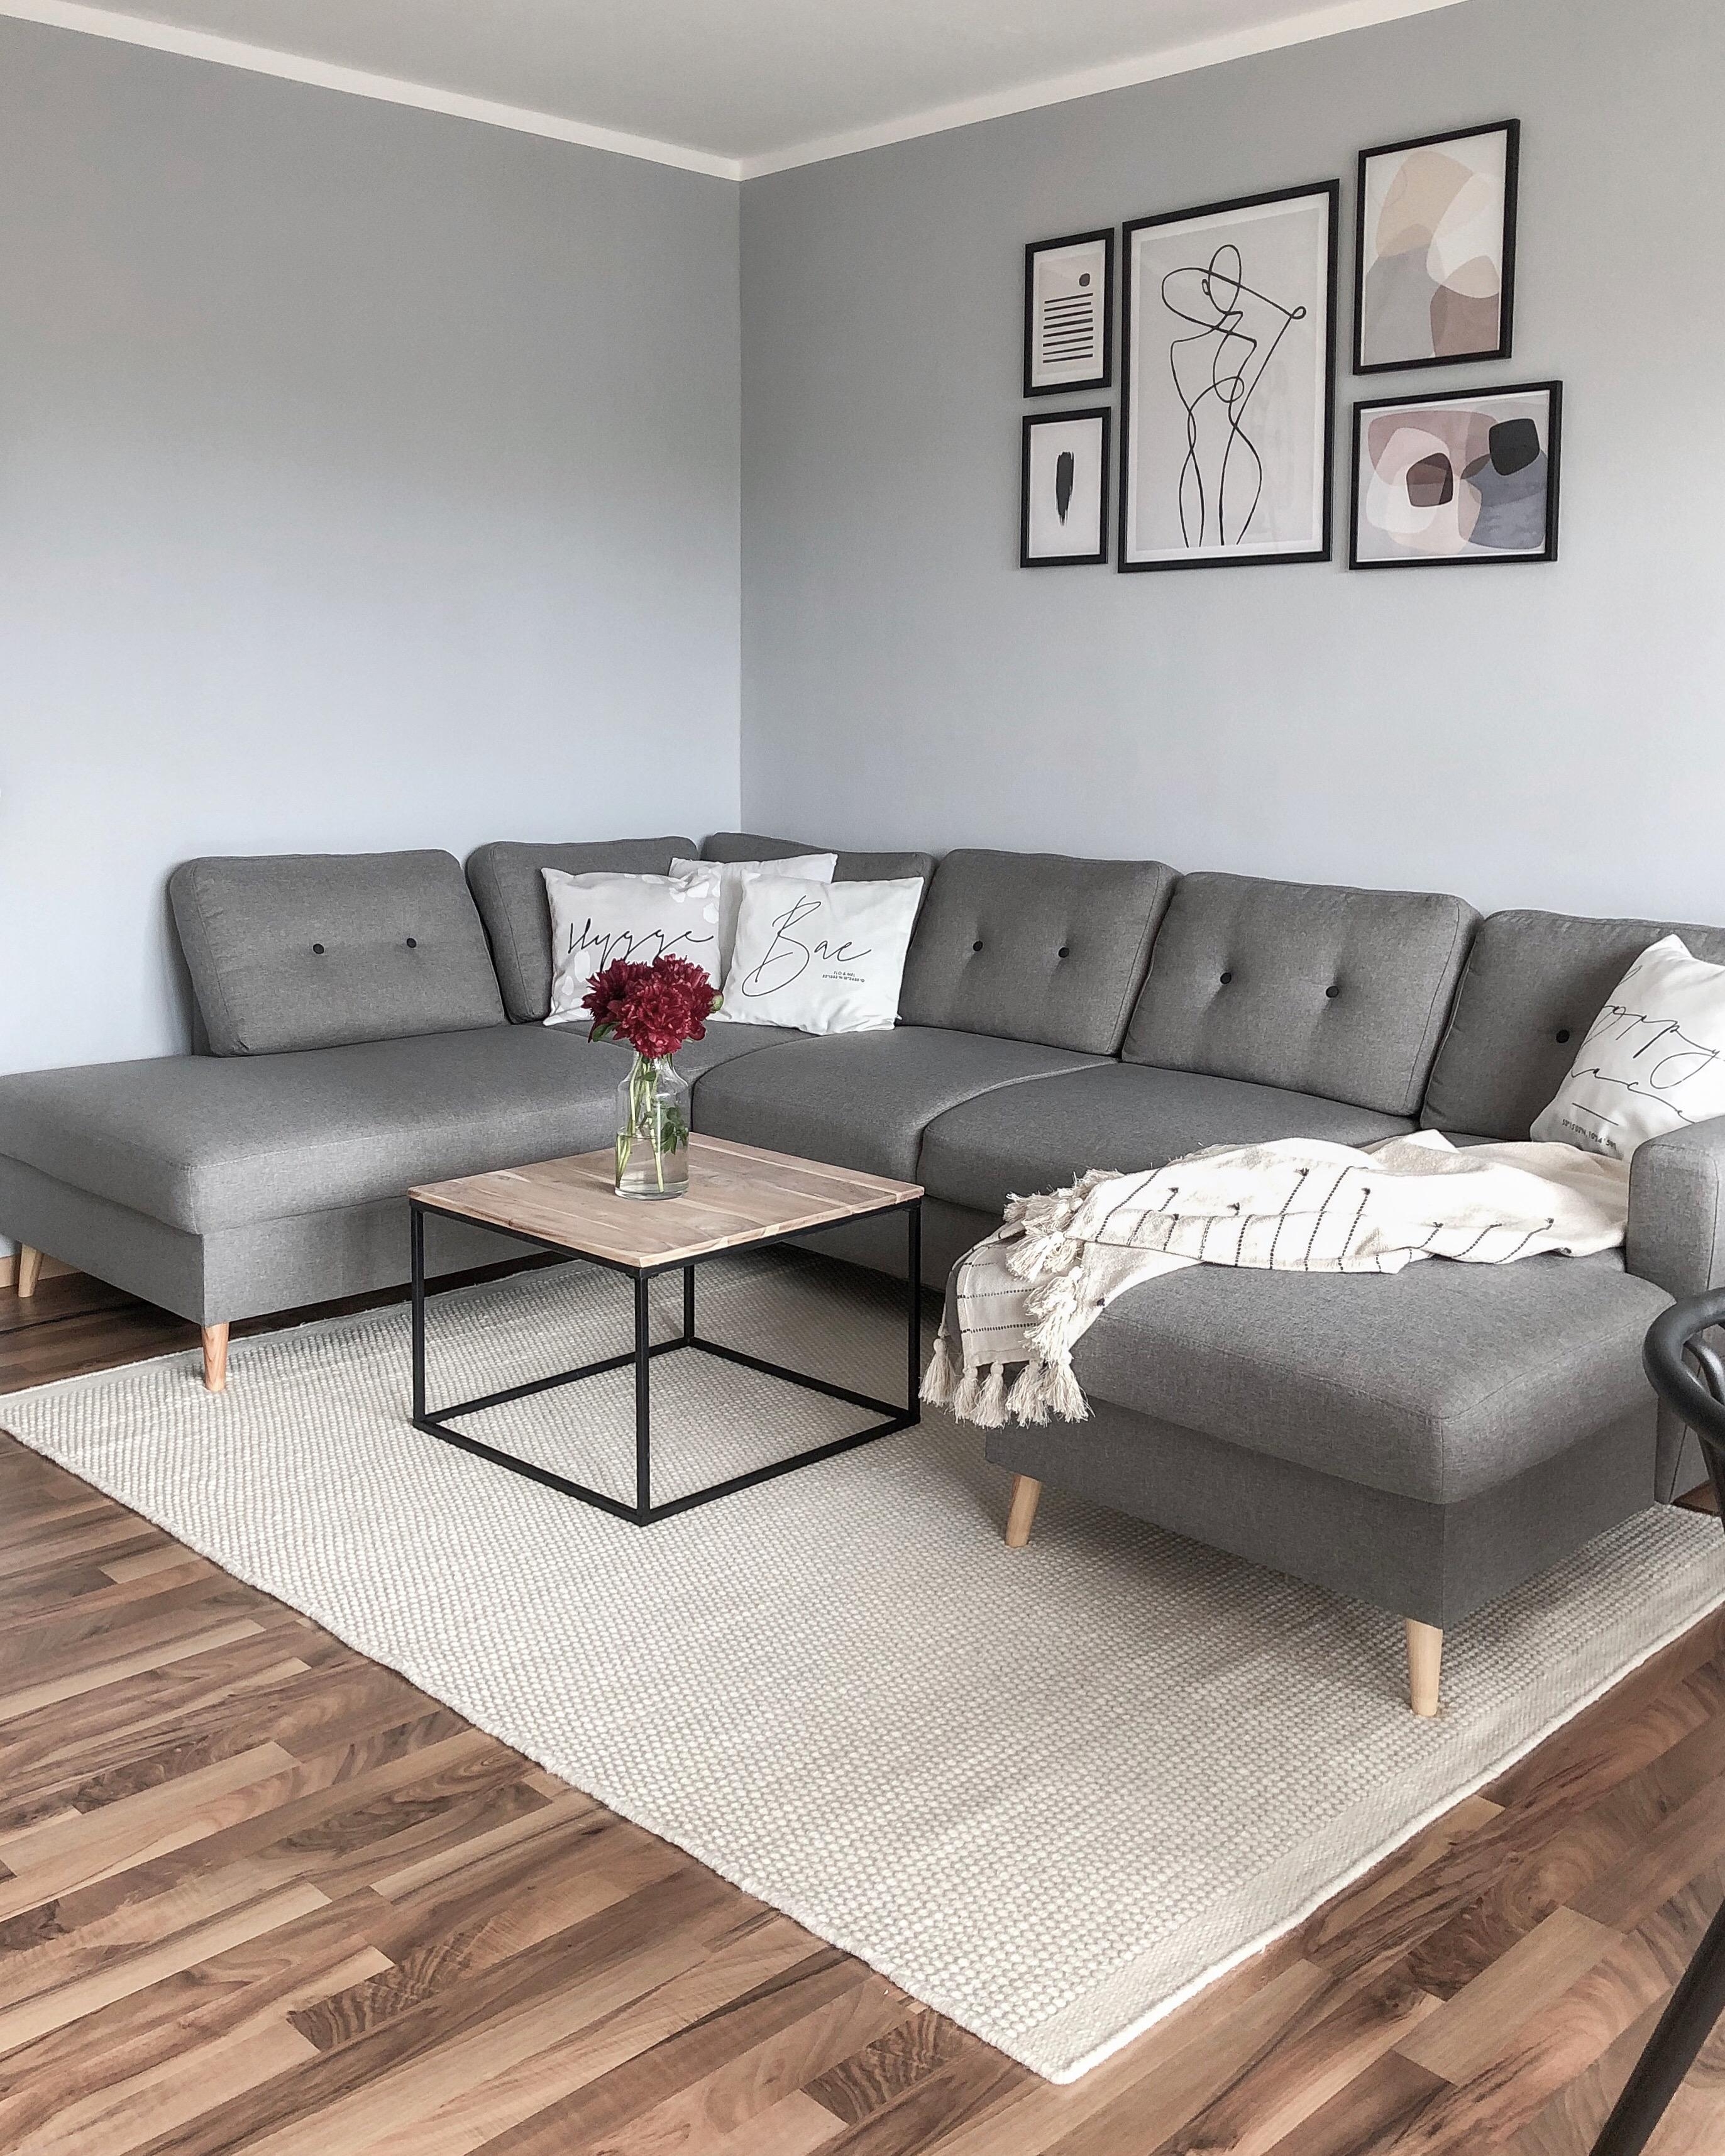 #couch #wohnzimmer #interior #livingroom #cozy 